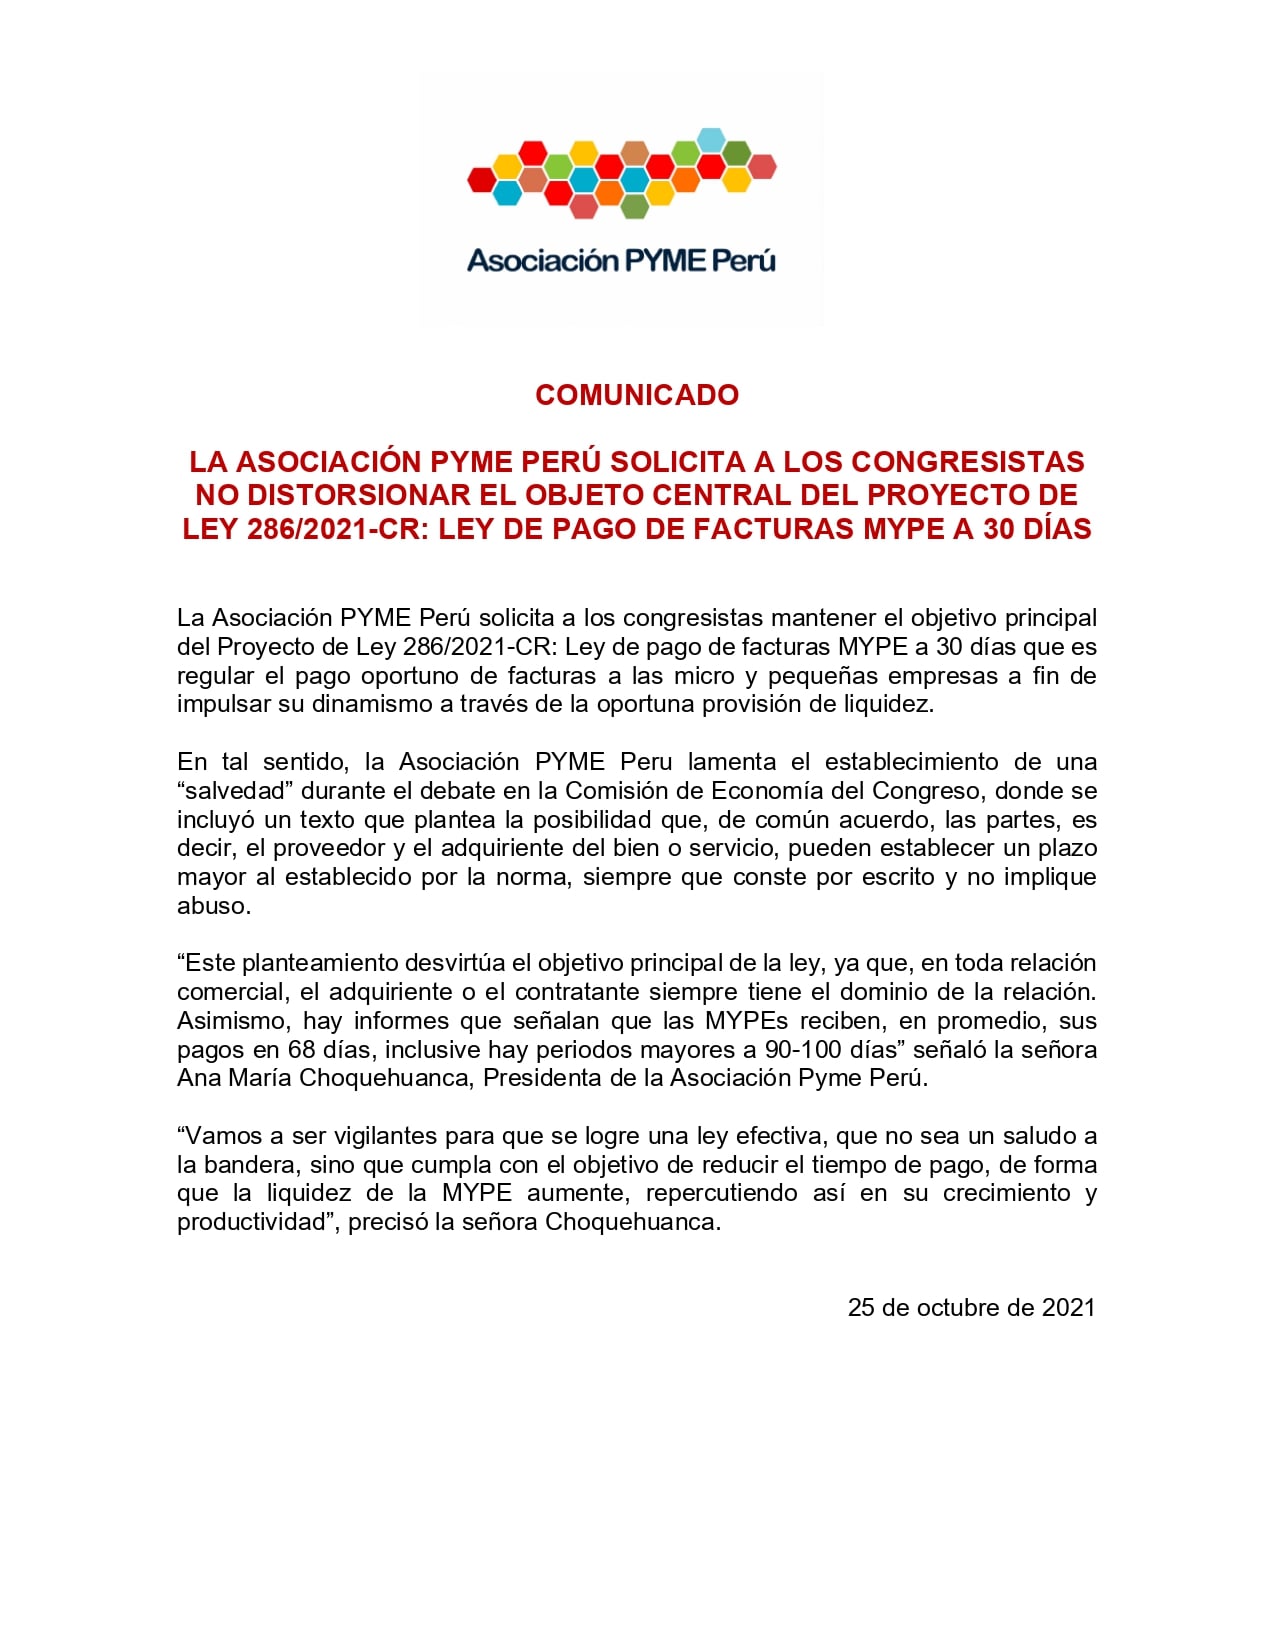 La asociación Pyme Perú solicita a los congresistas no distorsionar el objeto central del Proyecto de Ley  286/2021-CR